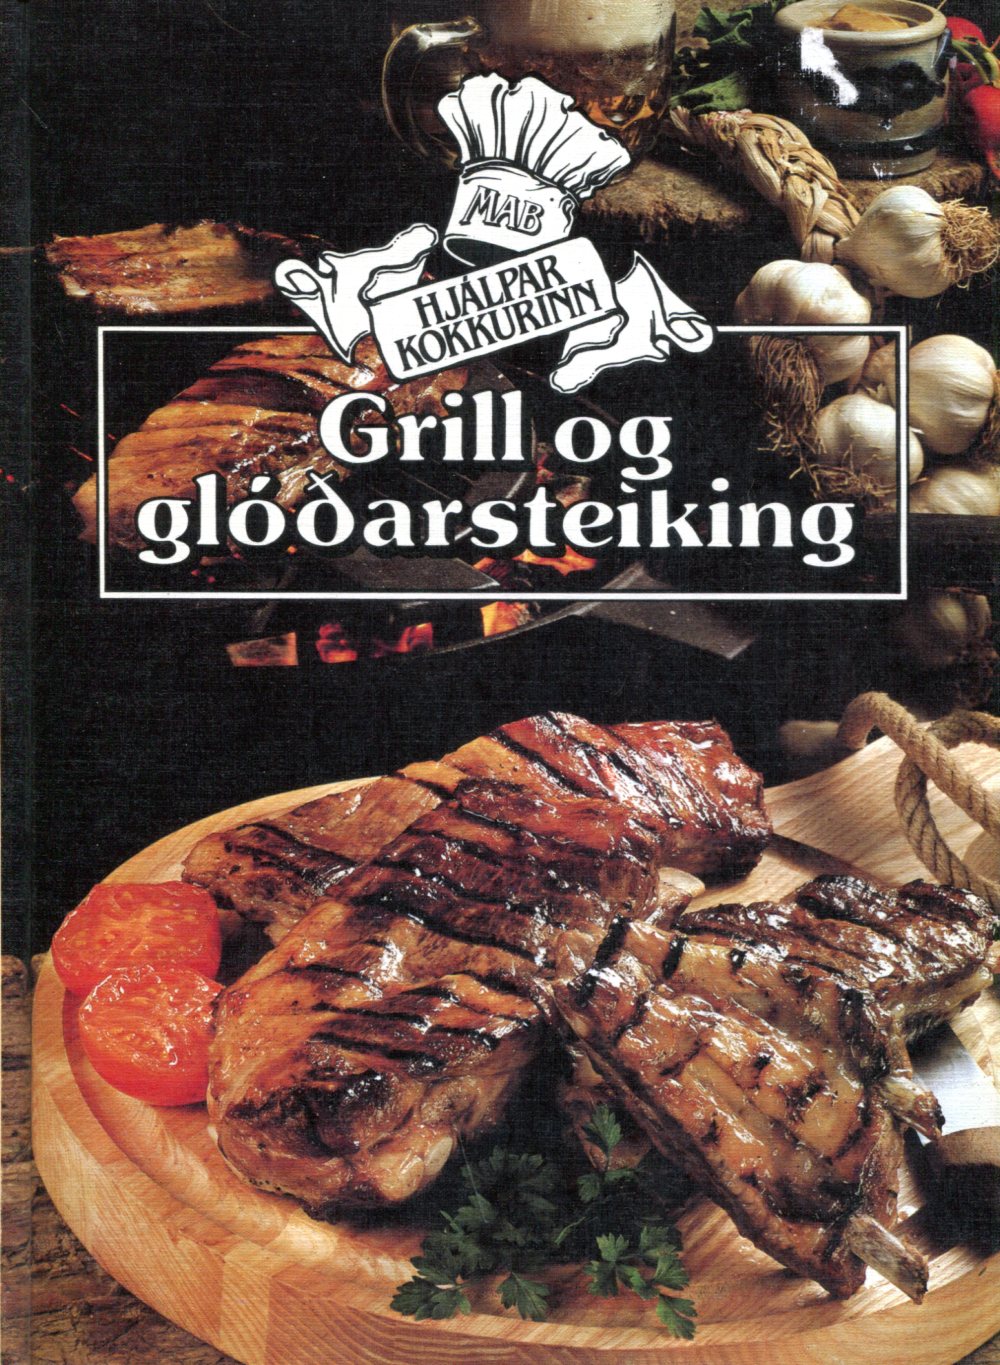 Grill og glóðarsteiking - Hjálparkokkurinn - Almenna Bókafélagið 1985